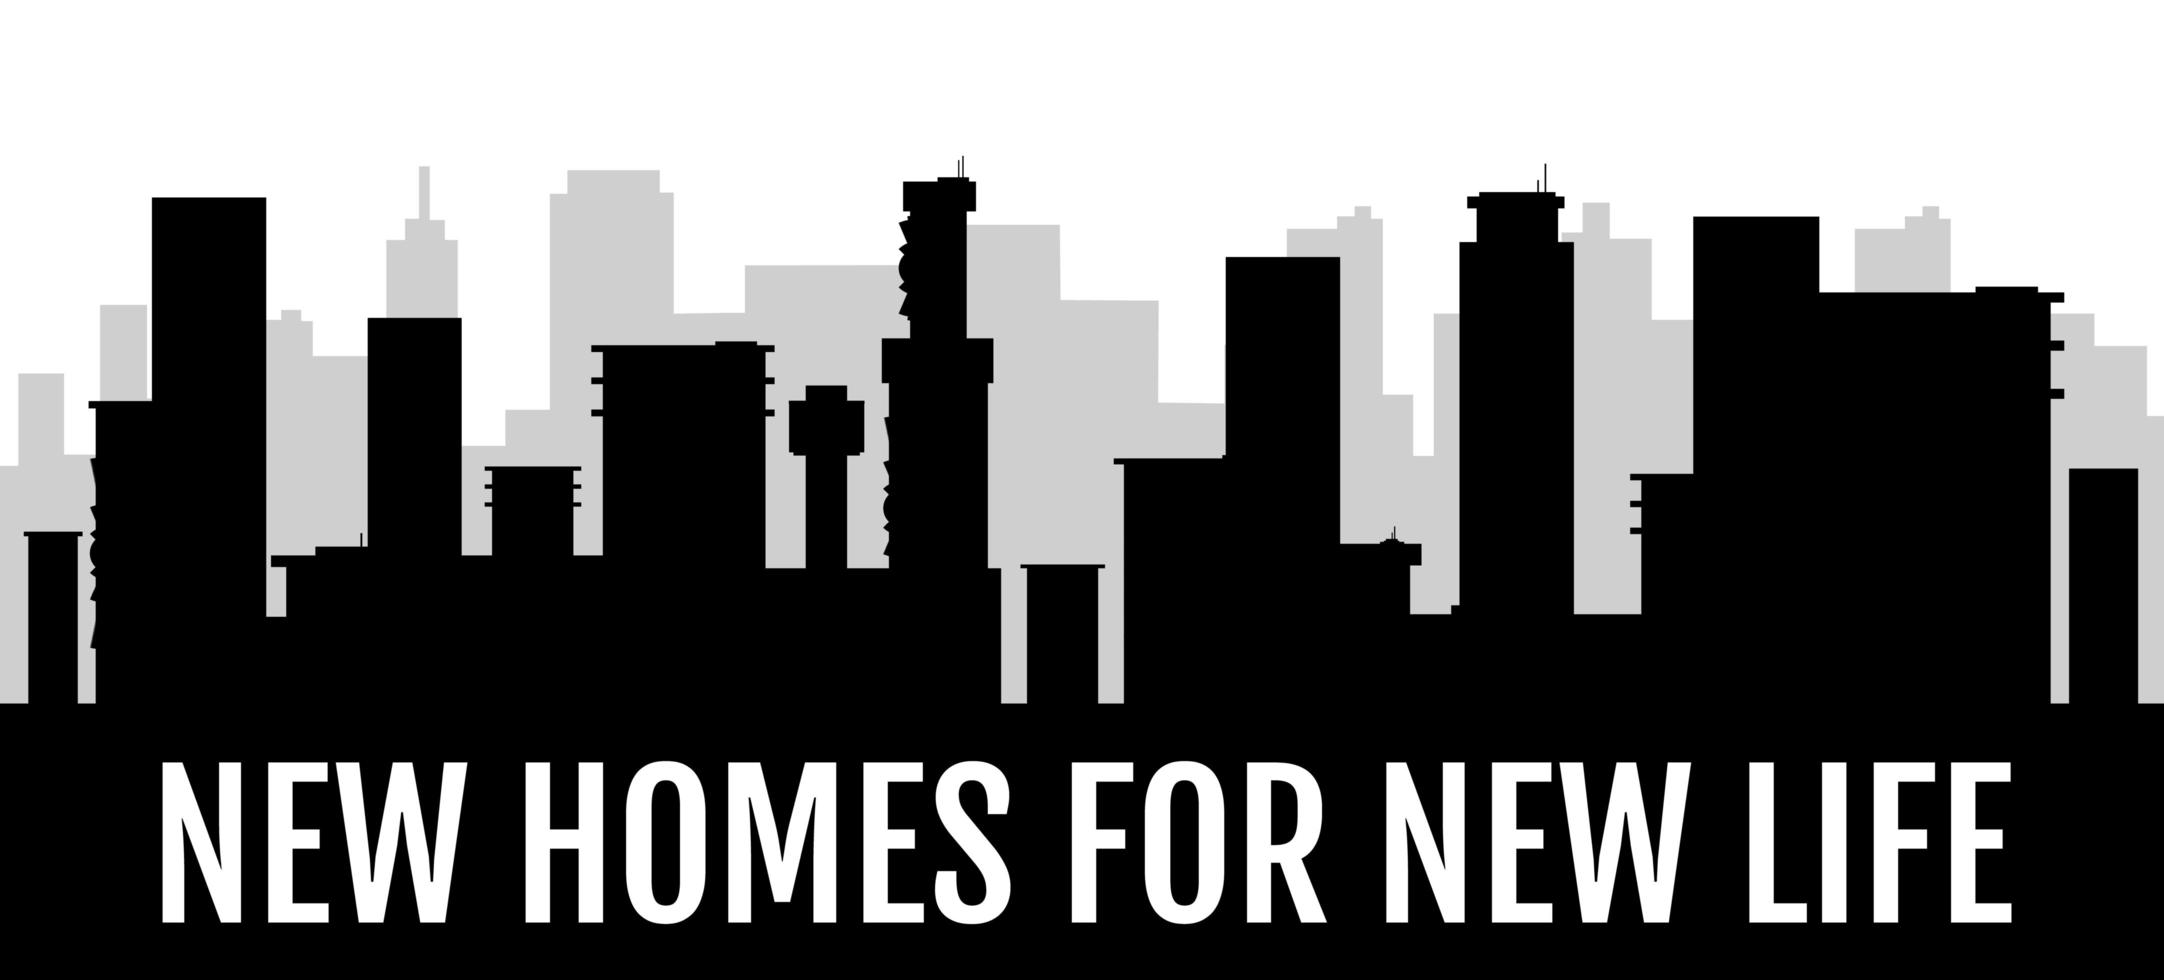 nya hem för nytt liv svart silhuett banner vektor